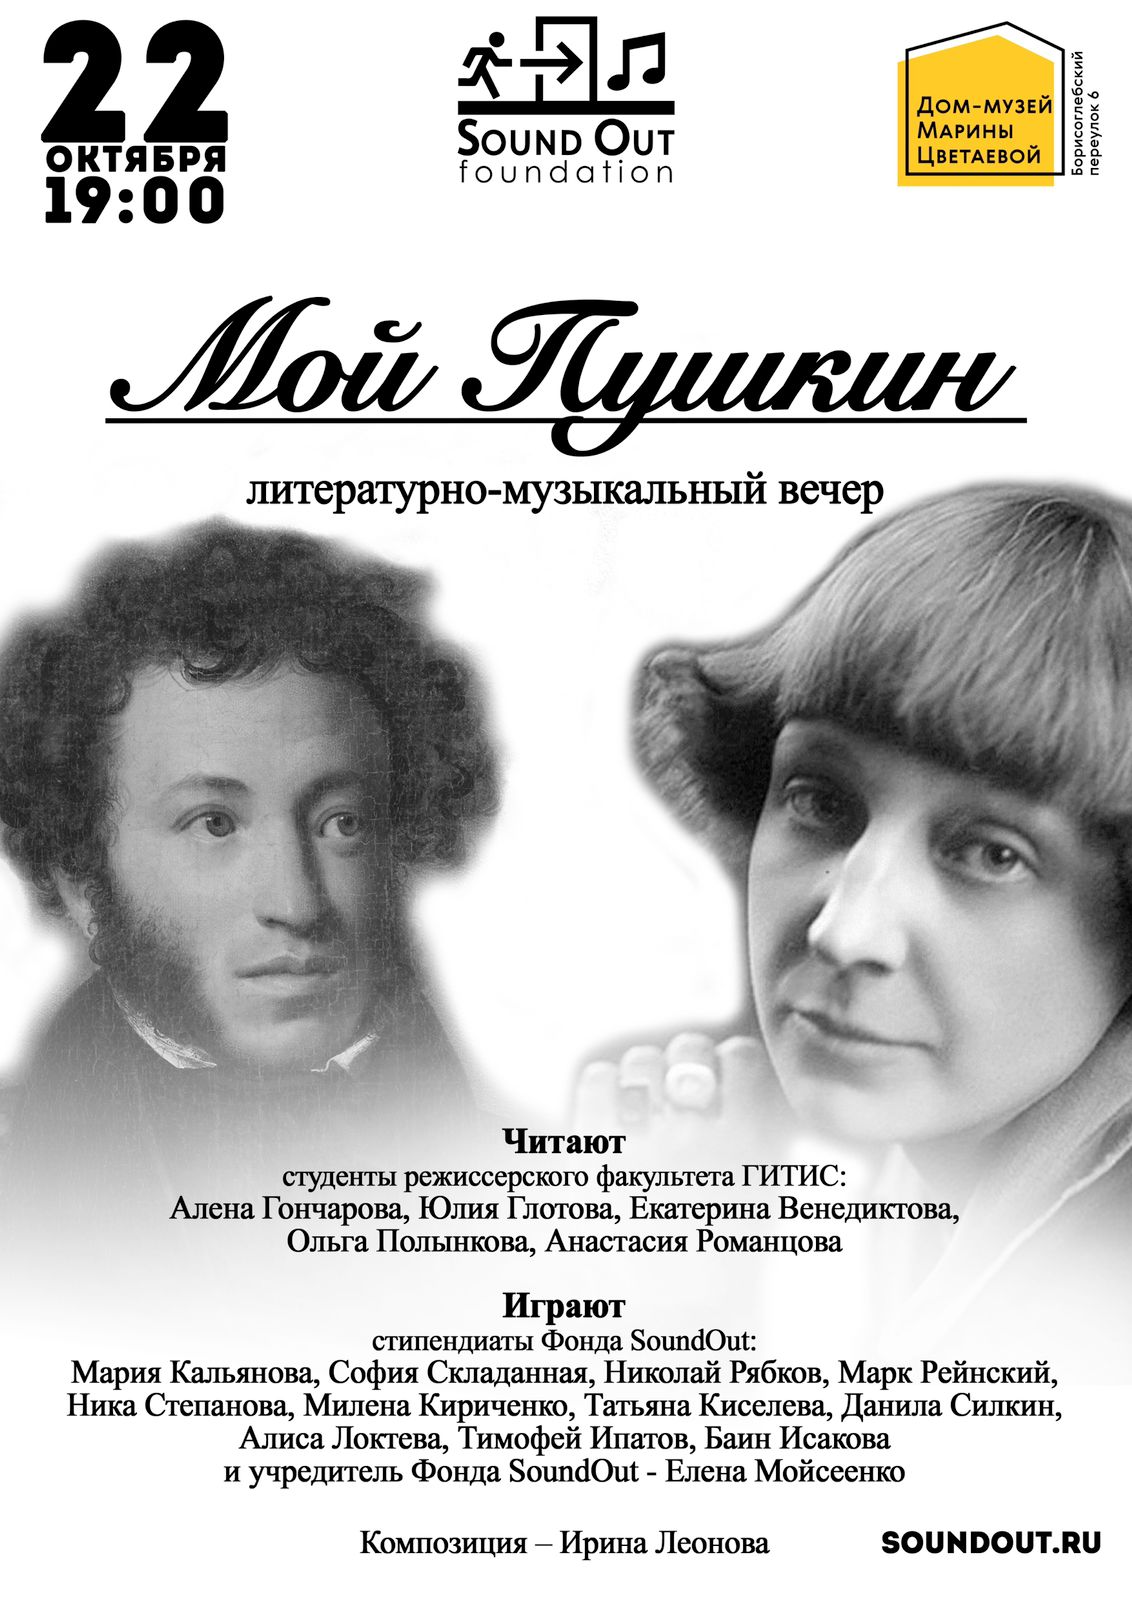 Иллюстрация: Литературно-музыкальный вечер «Мой Пушкин»